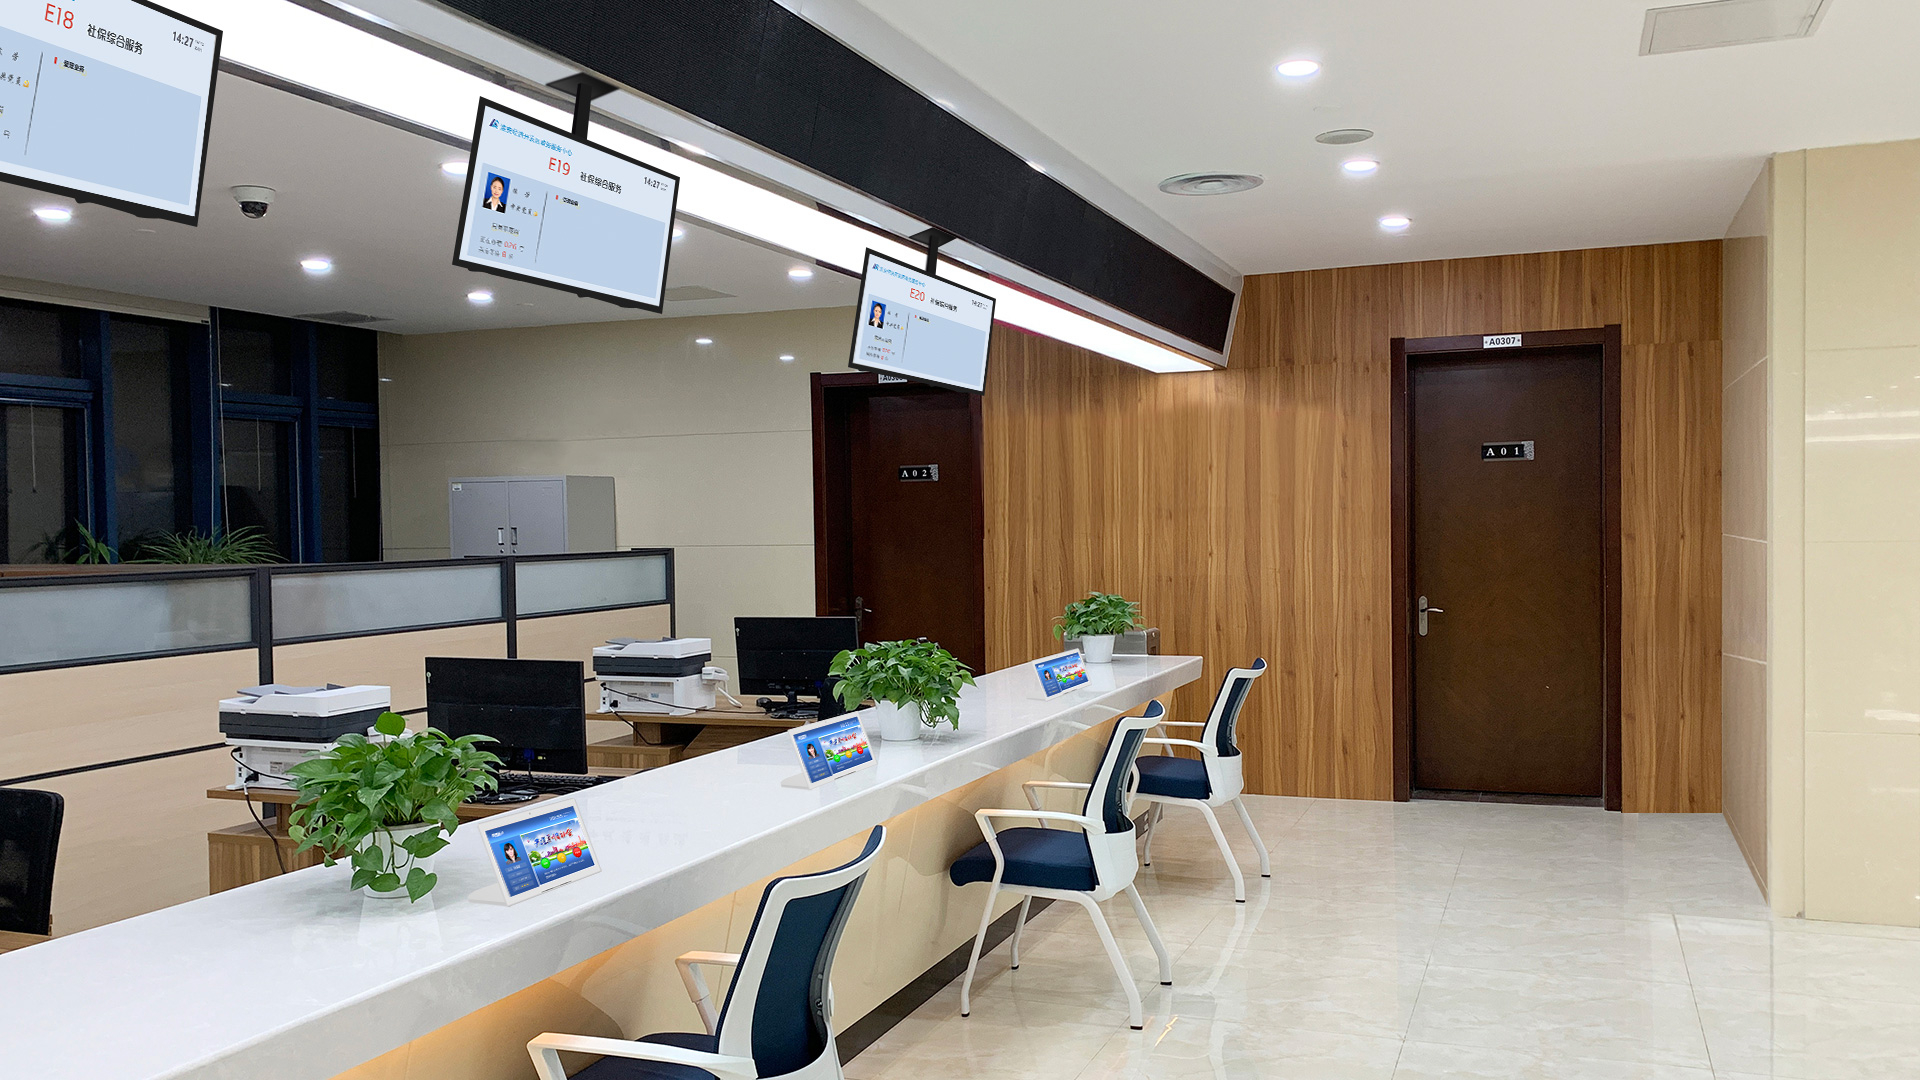 星际互动政务大厅排队叫号系统 打造便捷高效政务中心